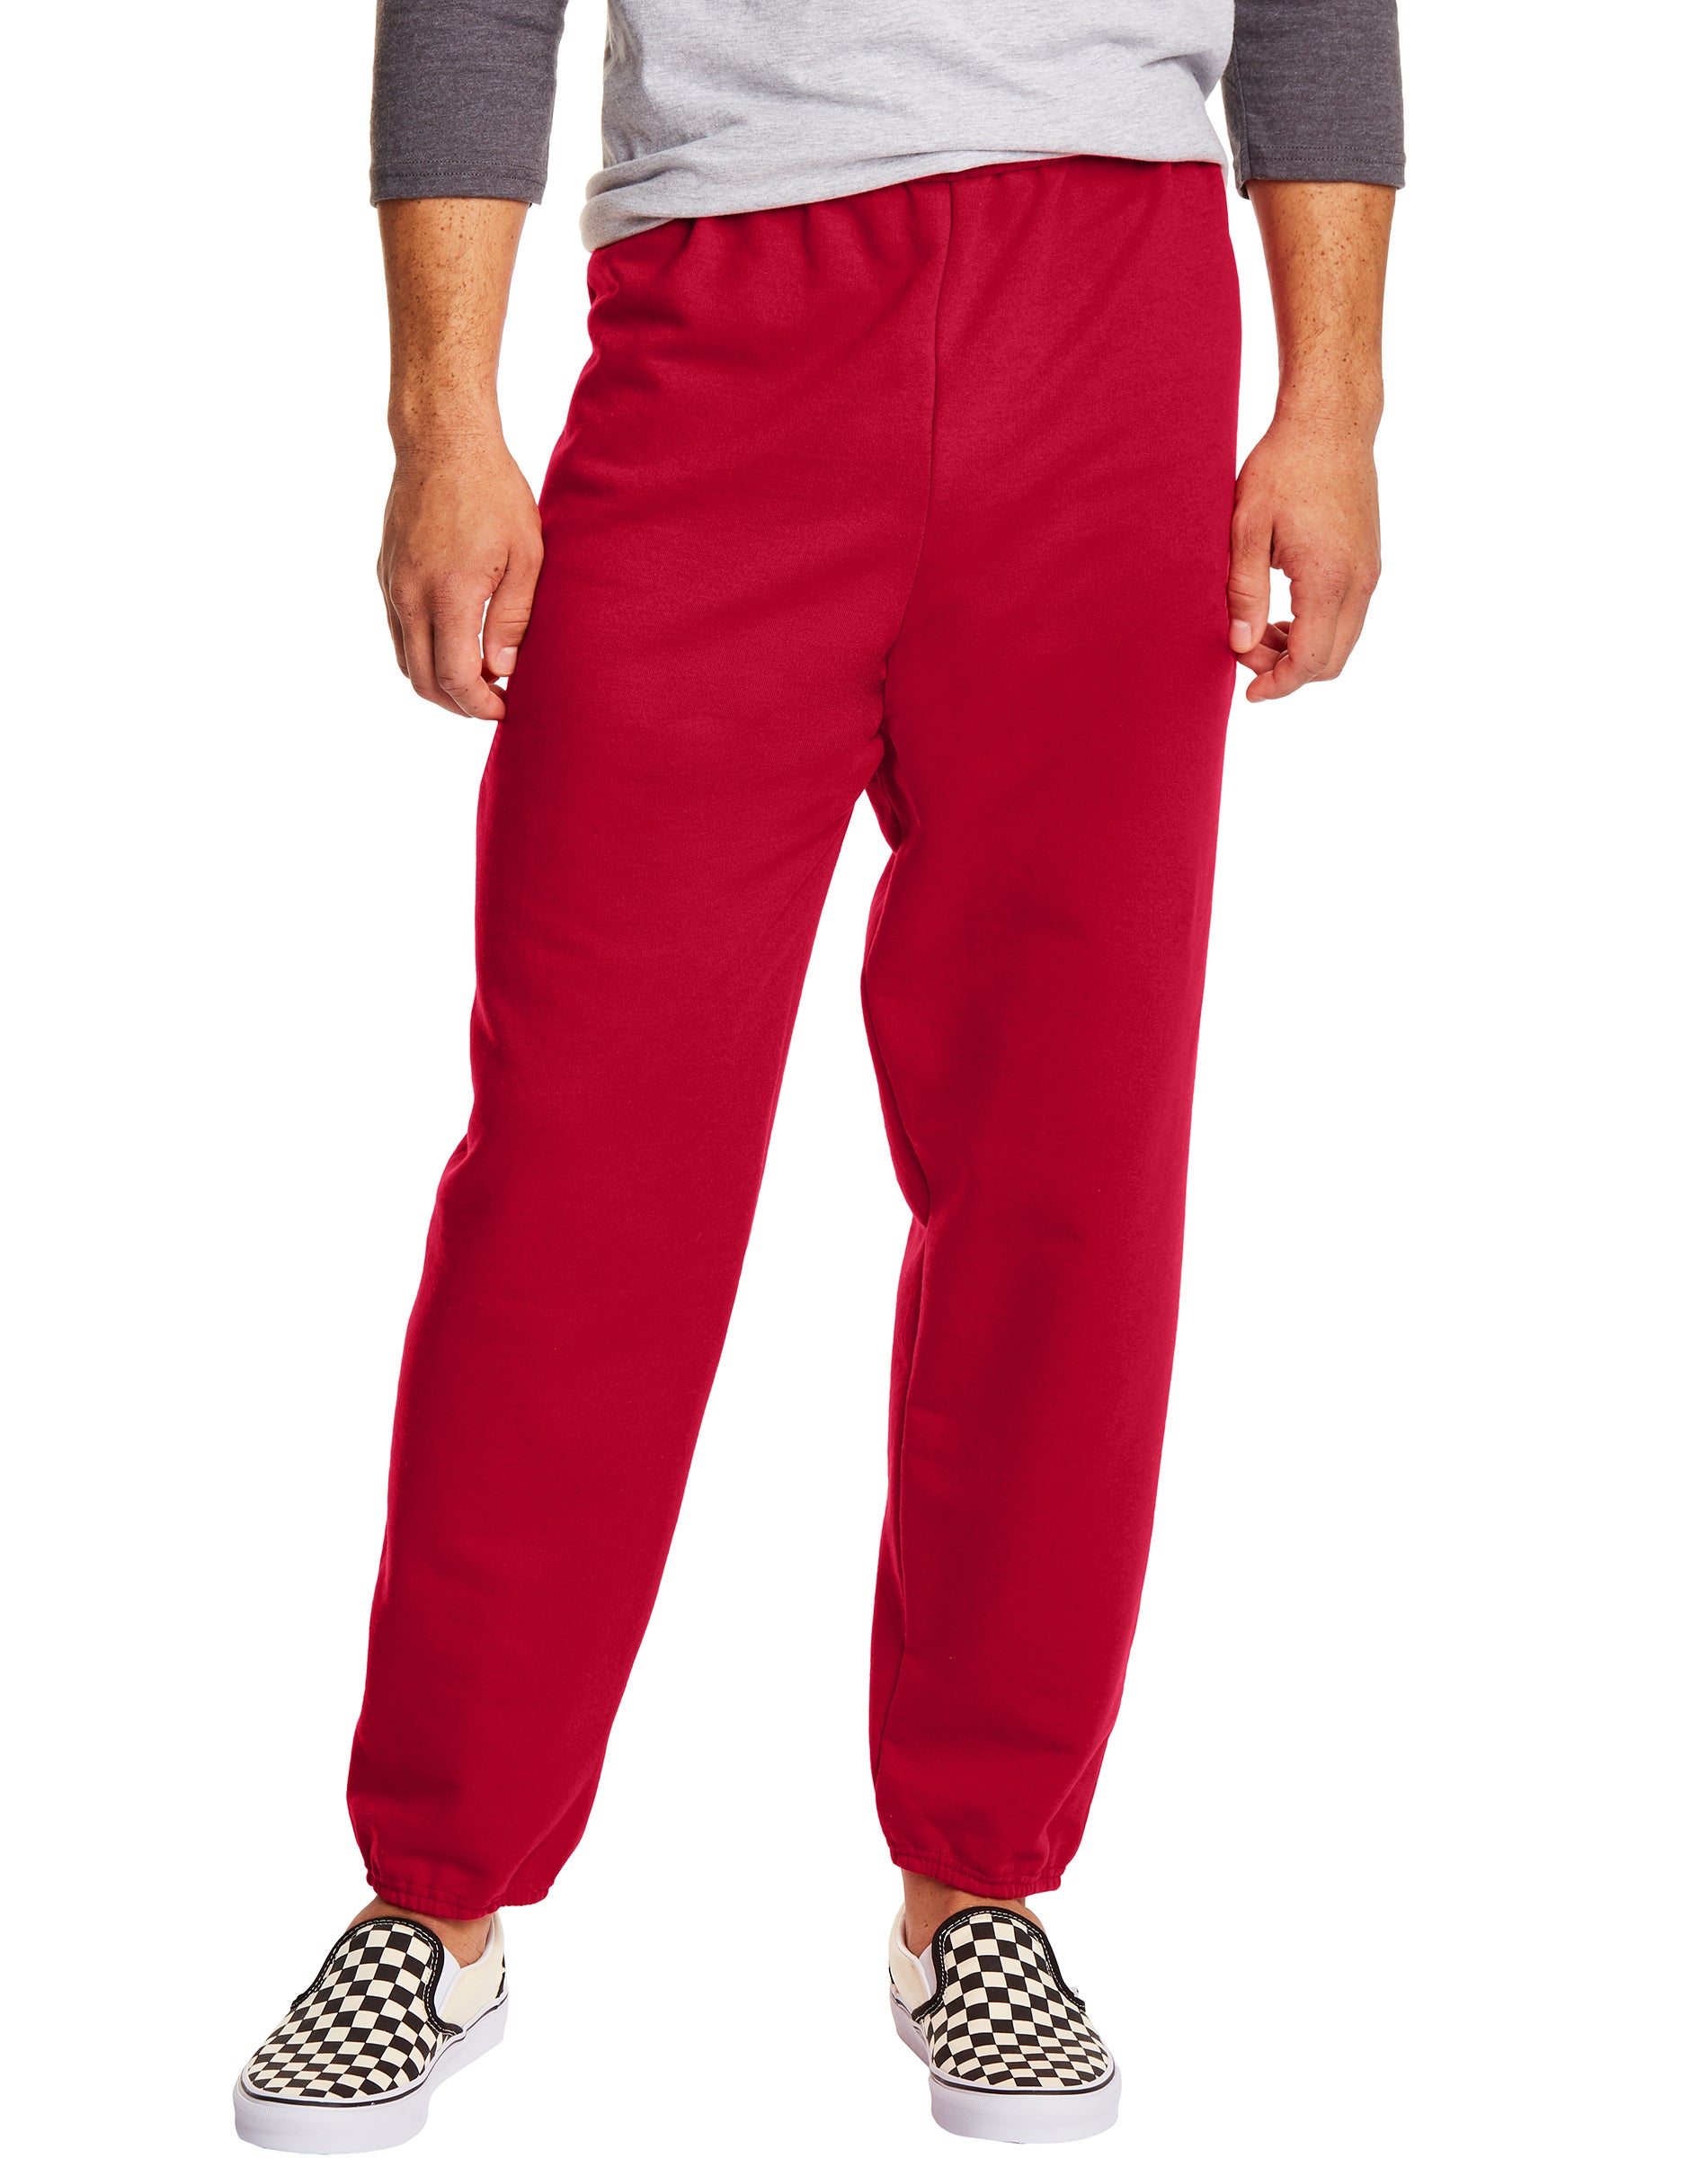 Hanes EcoSmart Men's Fleece Sweatpants, 2-Pack, 32" Deep Red M - image 1 of 4